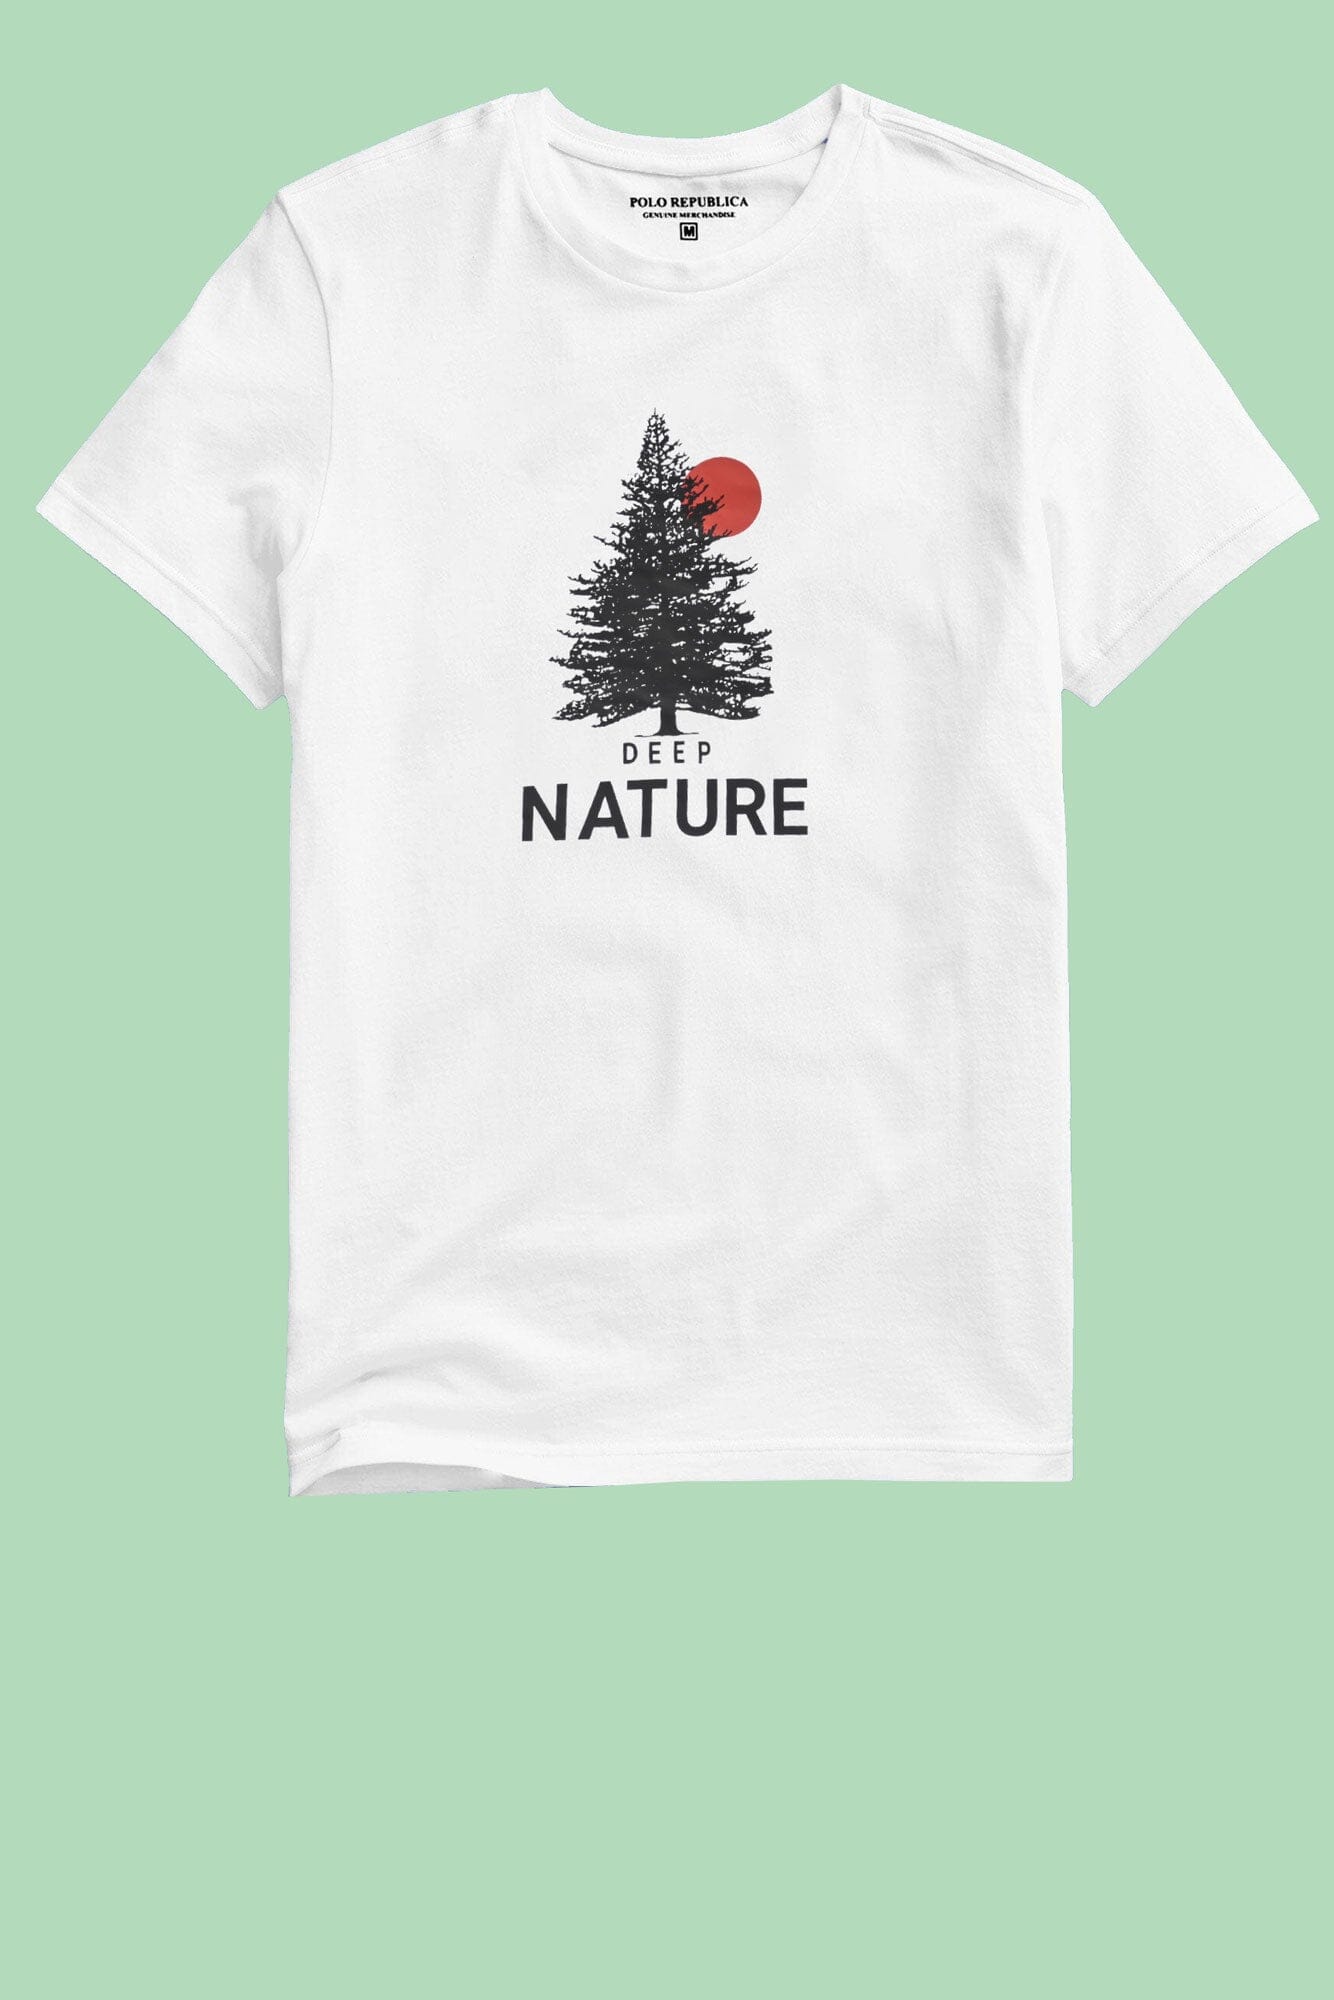 Polo Republica Men's Deep Nature Printed Crew Neck Tee Shirt